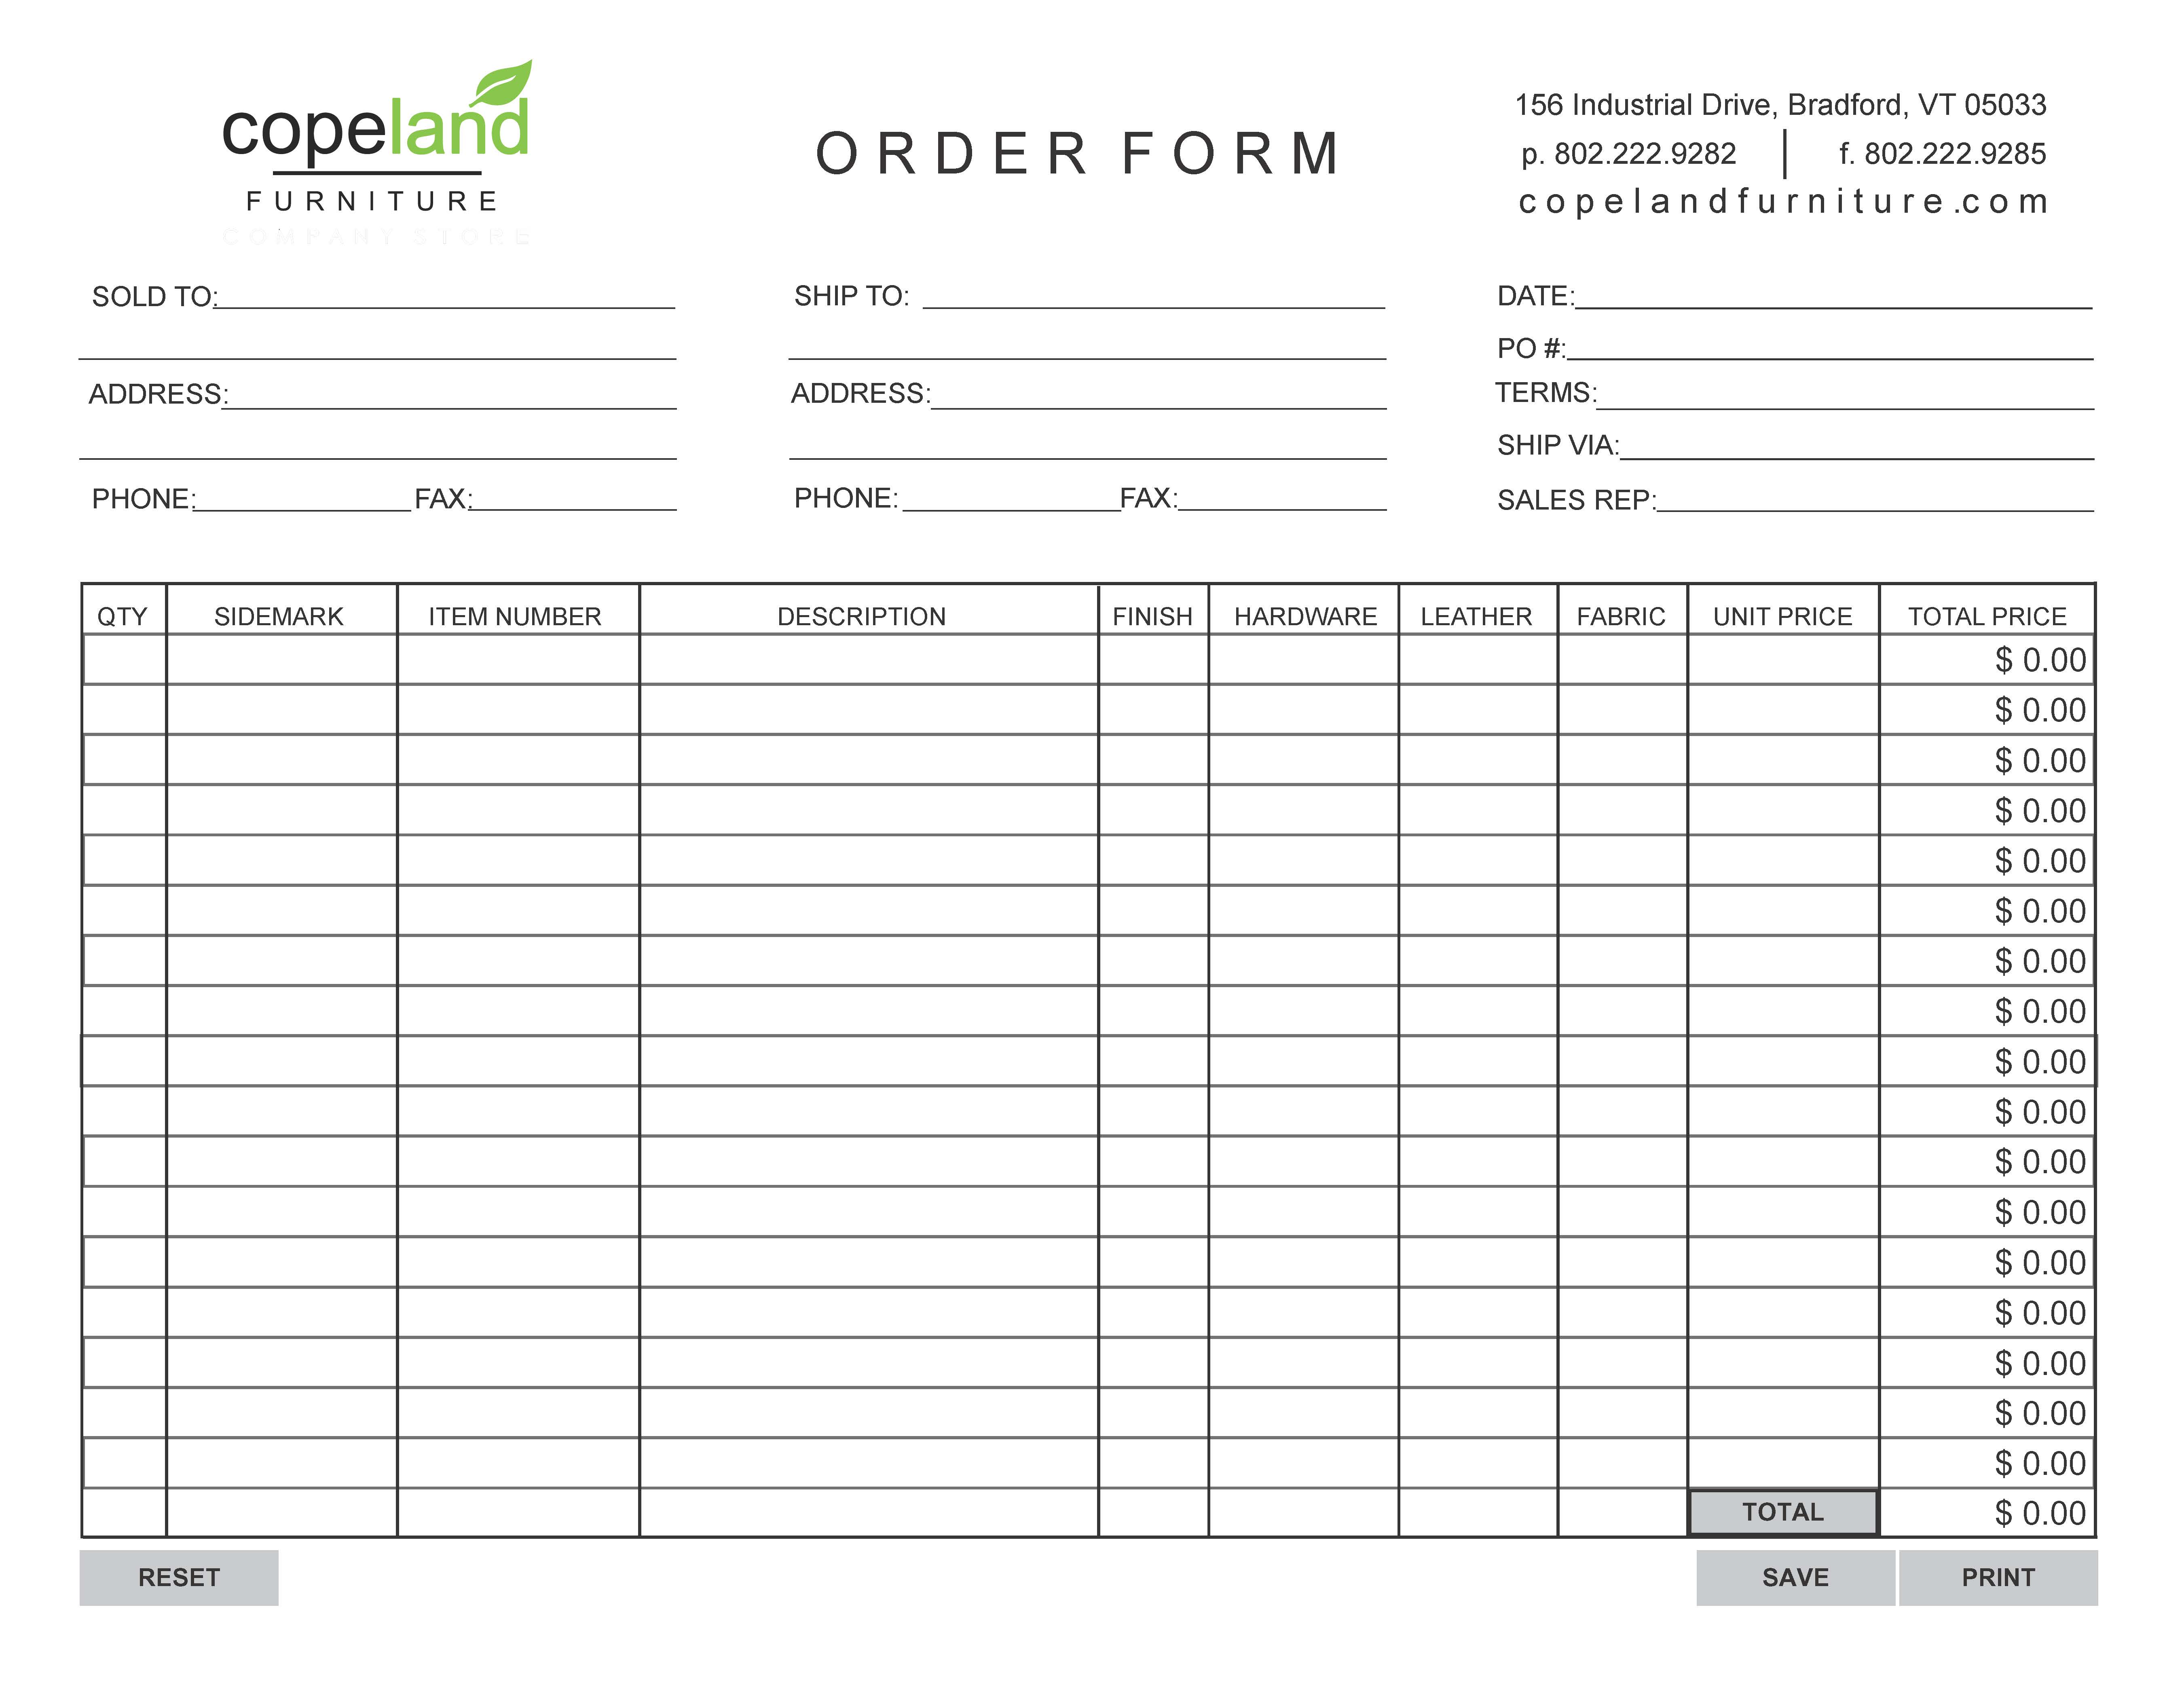 Copeland Furniture Order Form